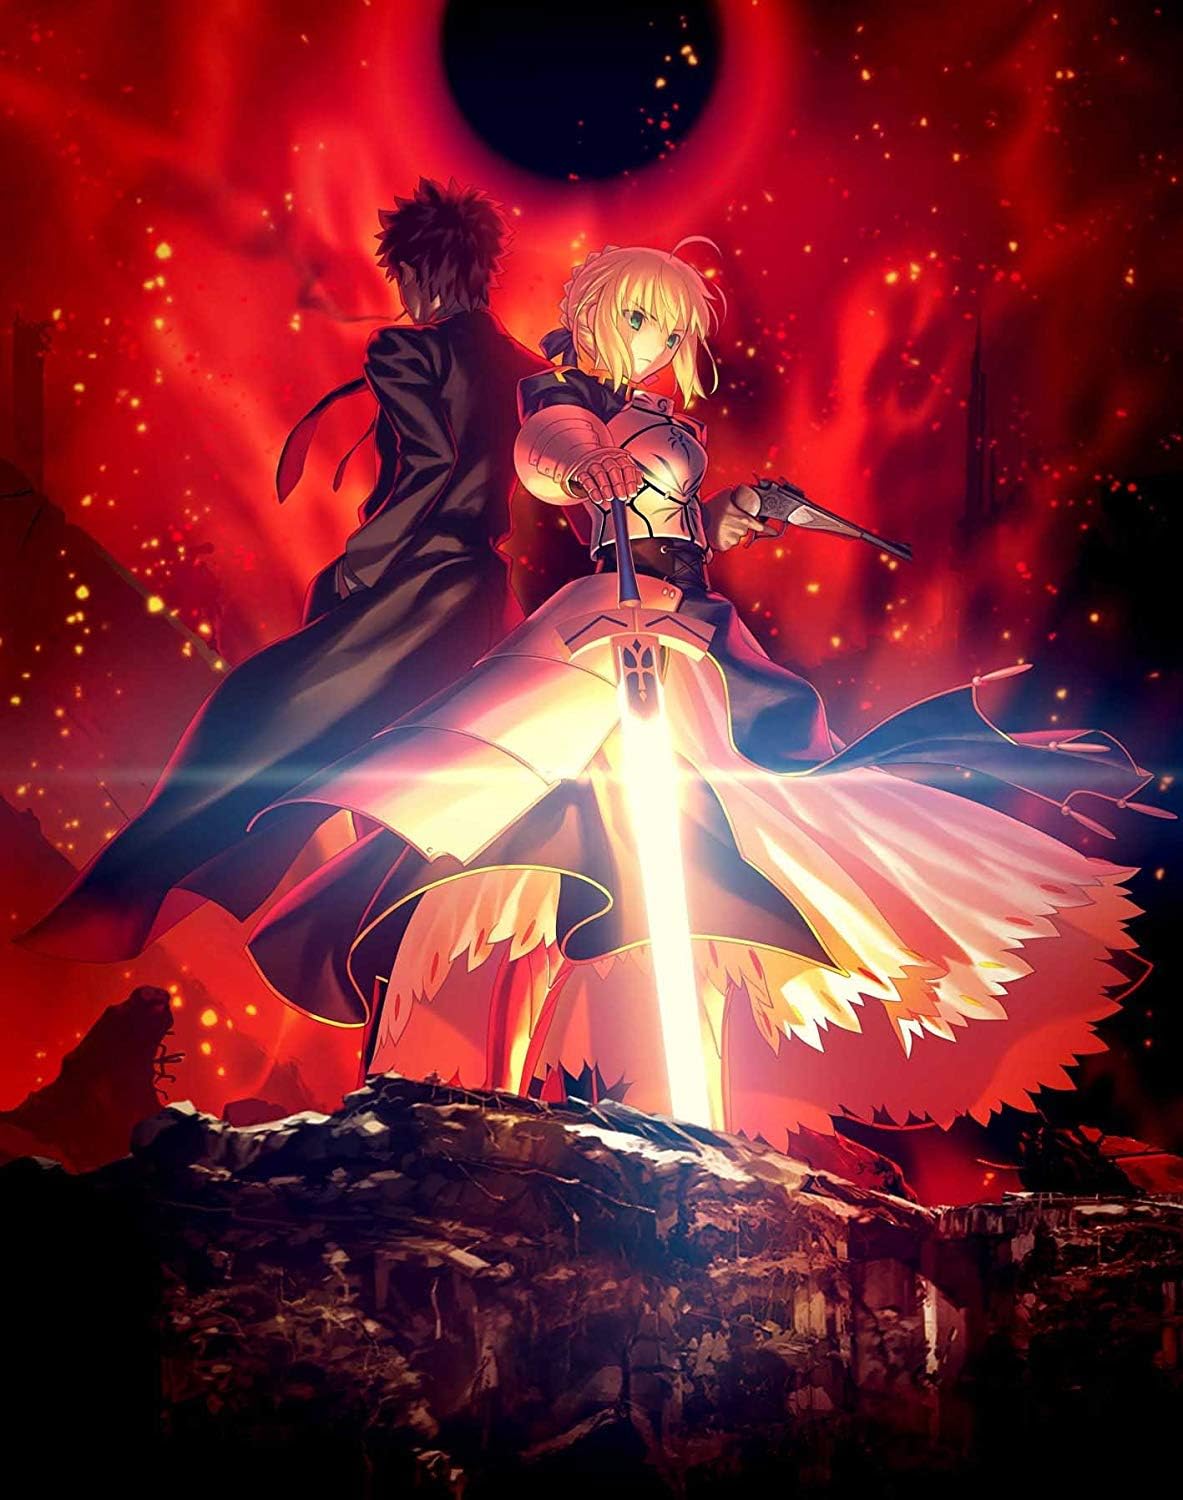 アニメ「Fate/Zero」のBD BOXスタンダードエディションがAmazonにて28%オフで販売中 - GAME Watch